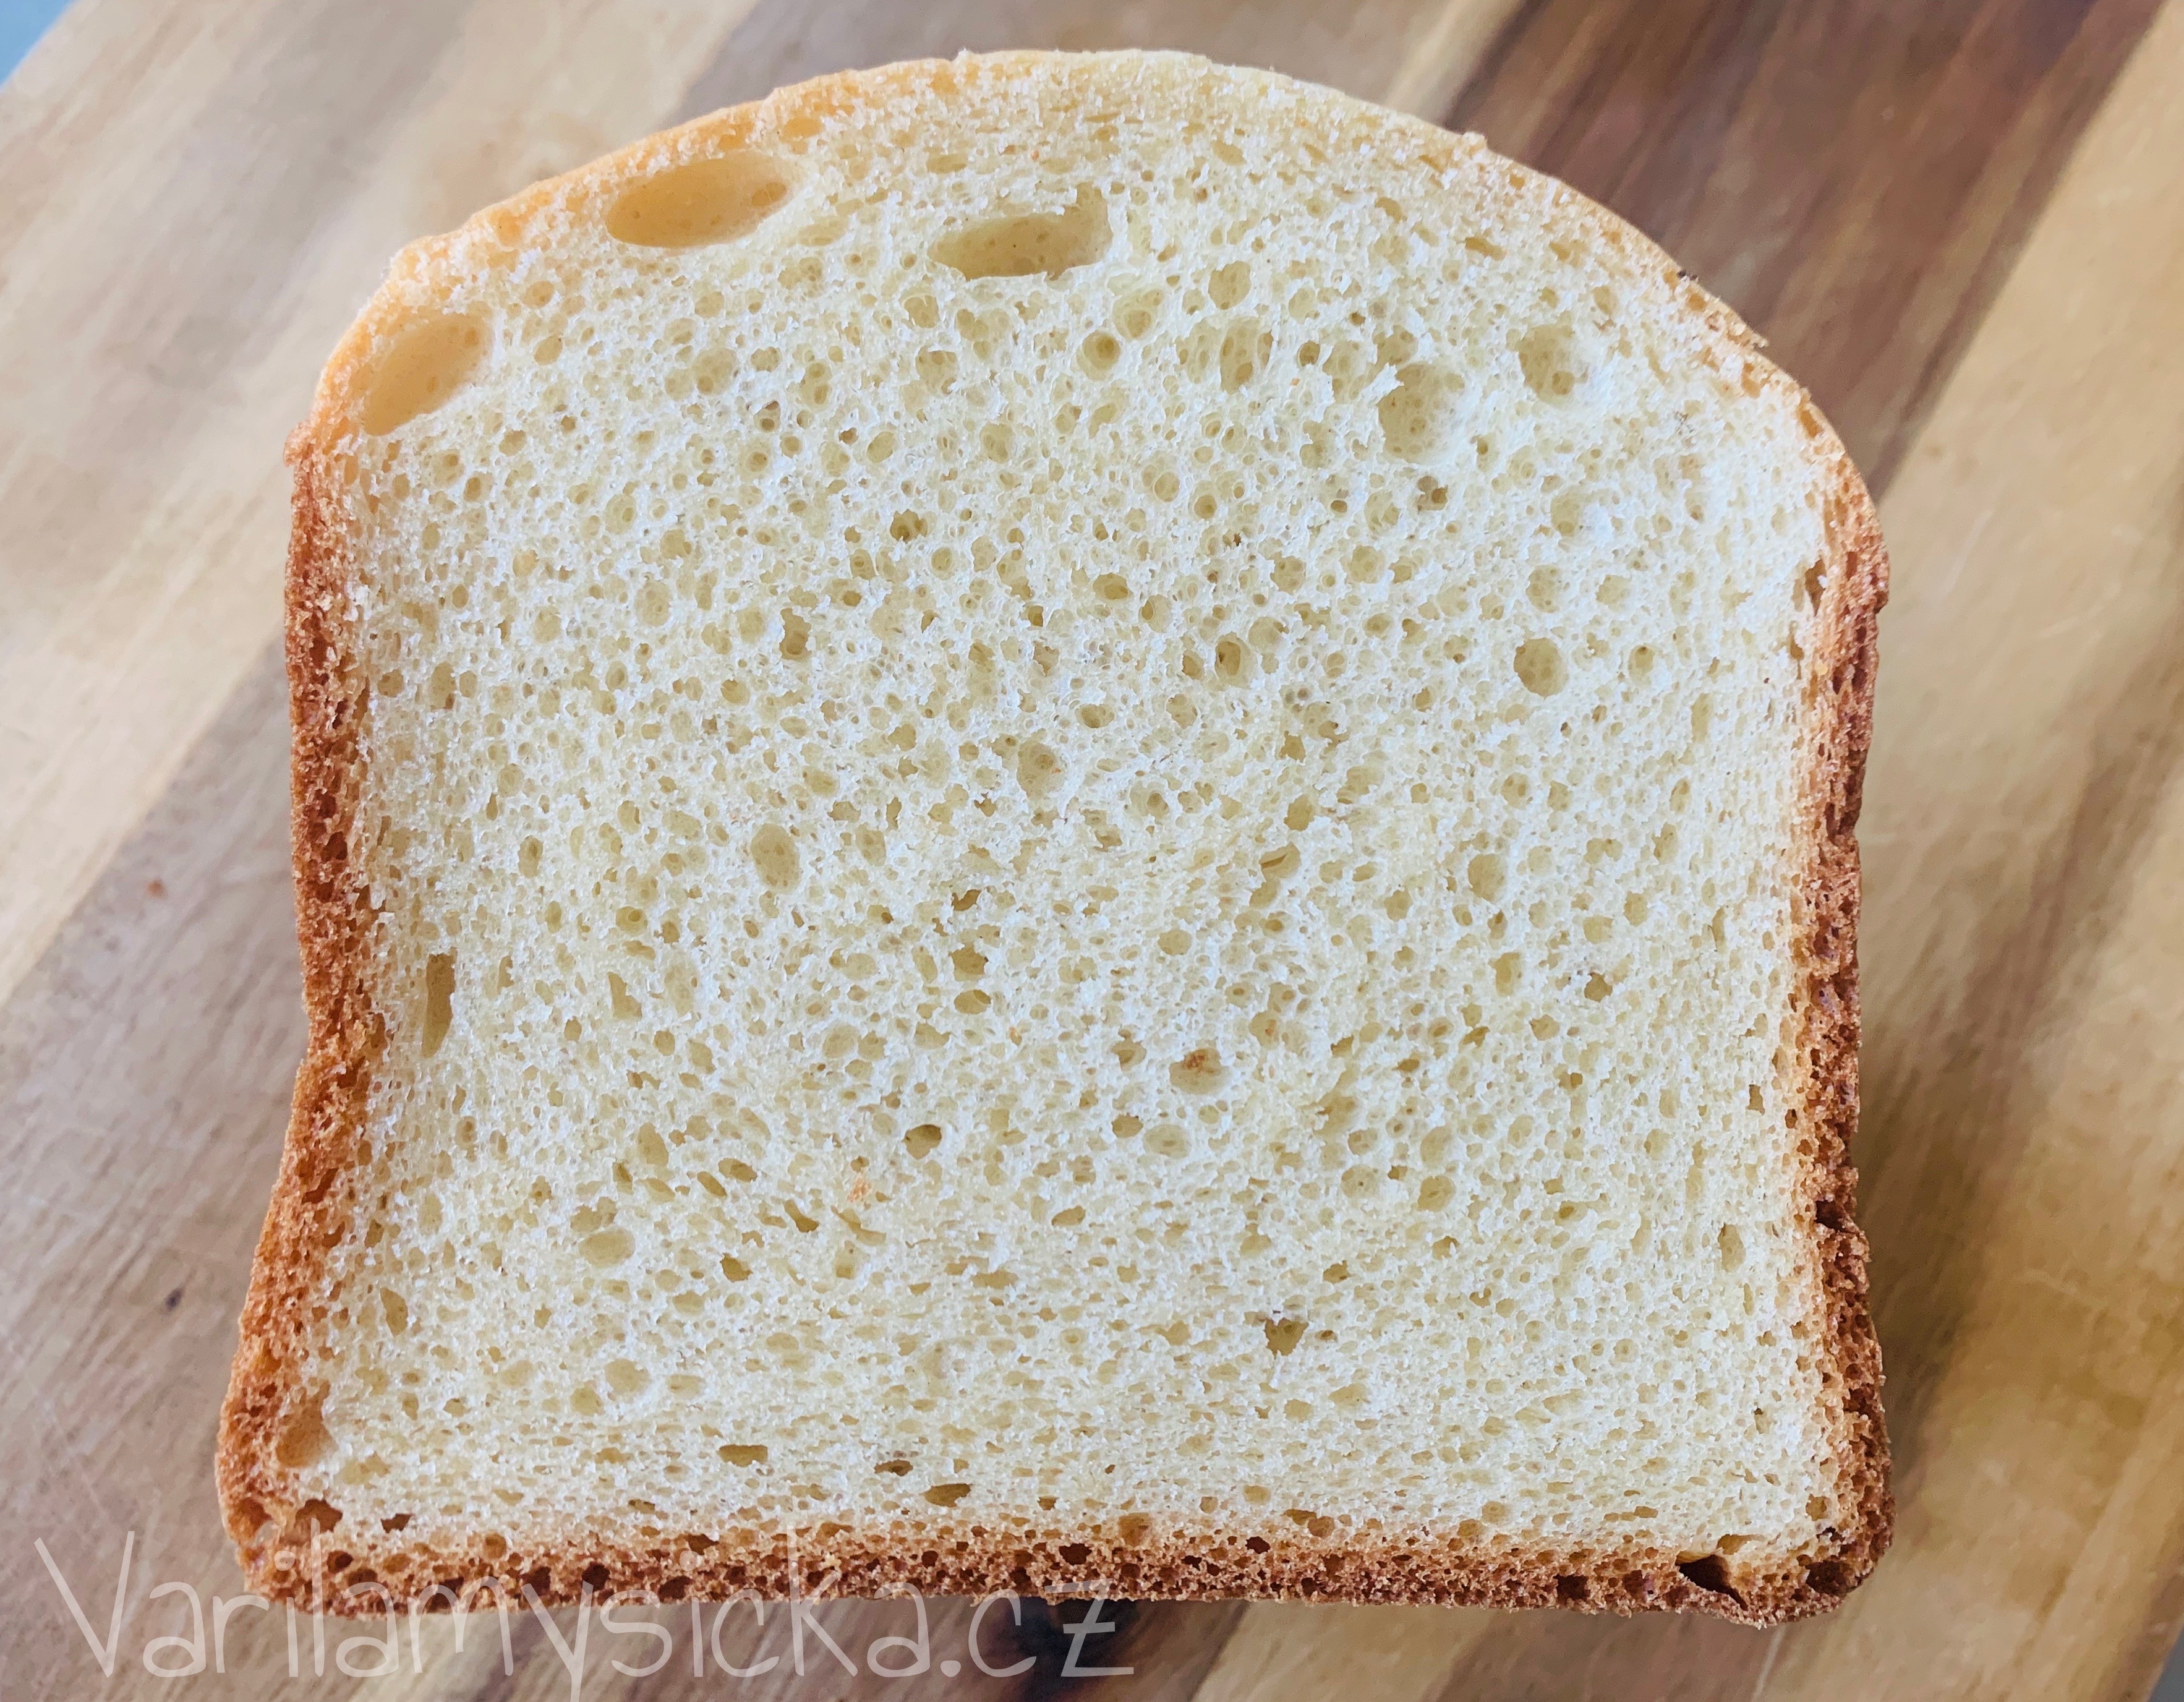 Bílý toustový chléb z domácí pekárny